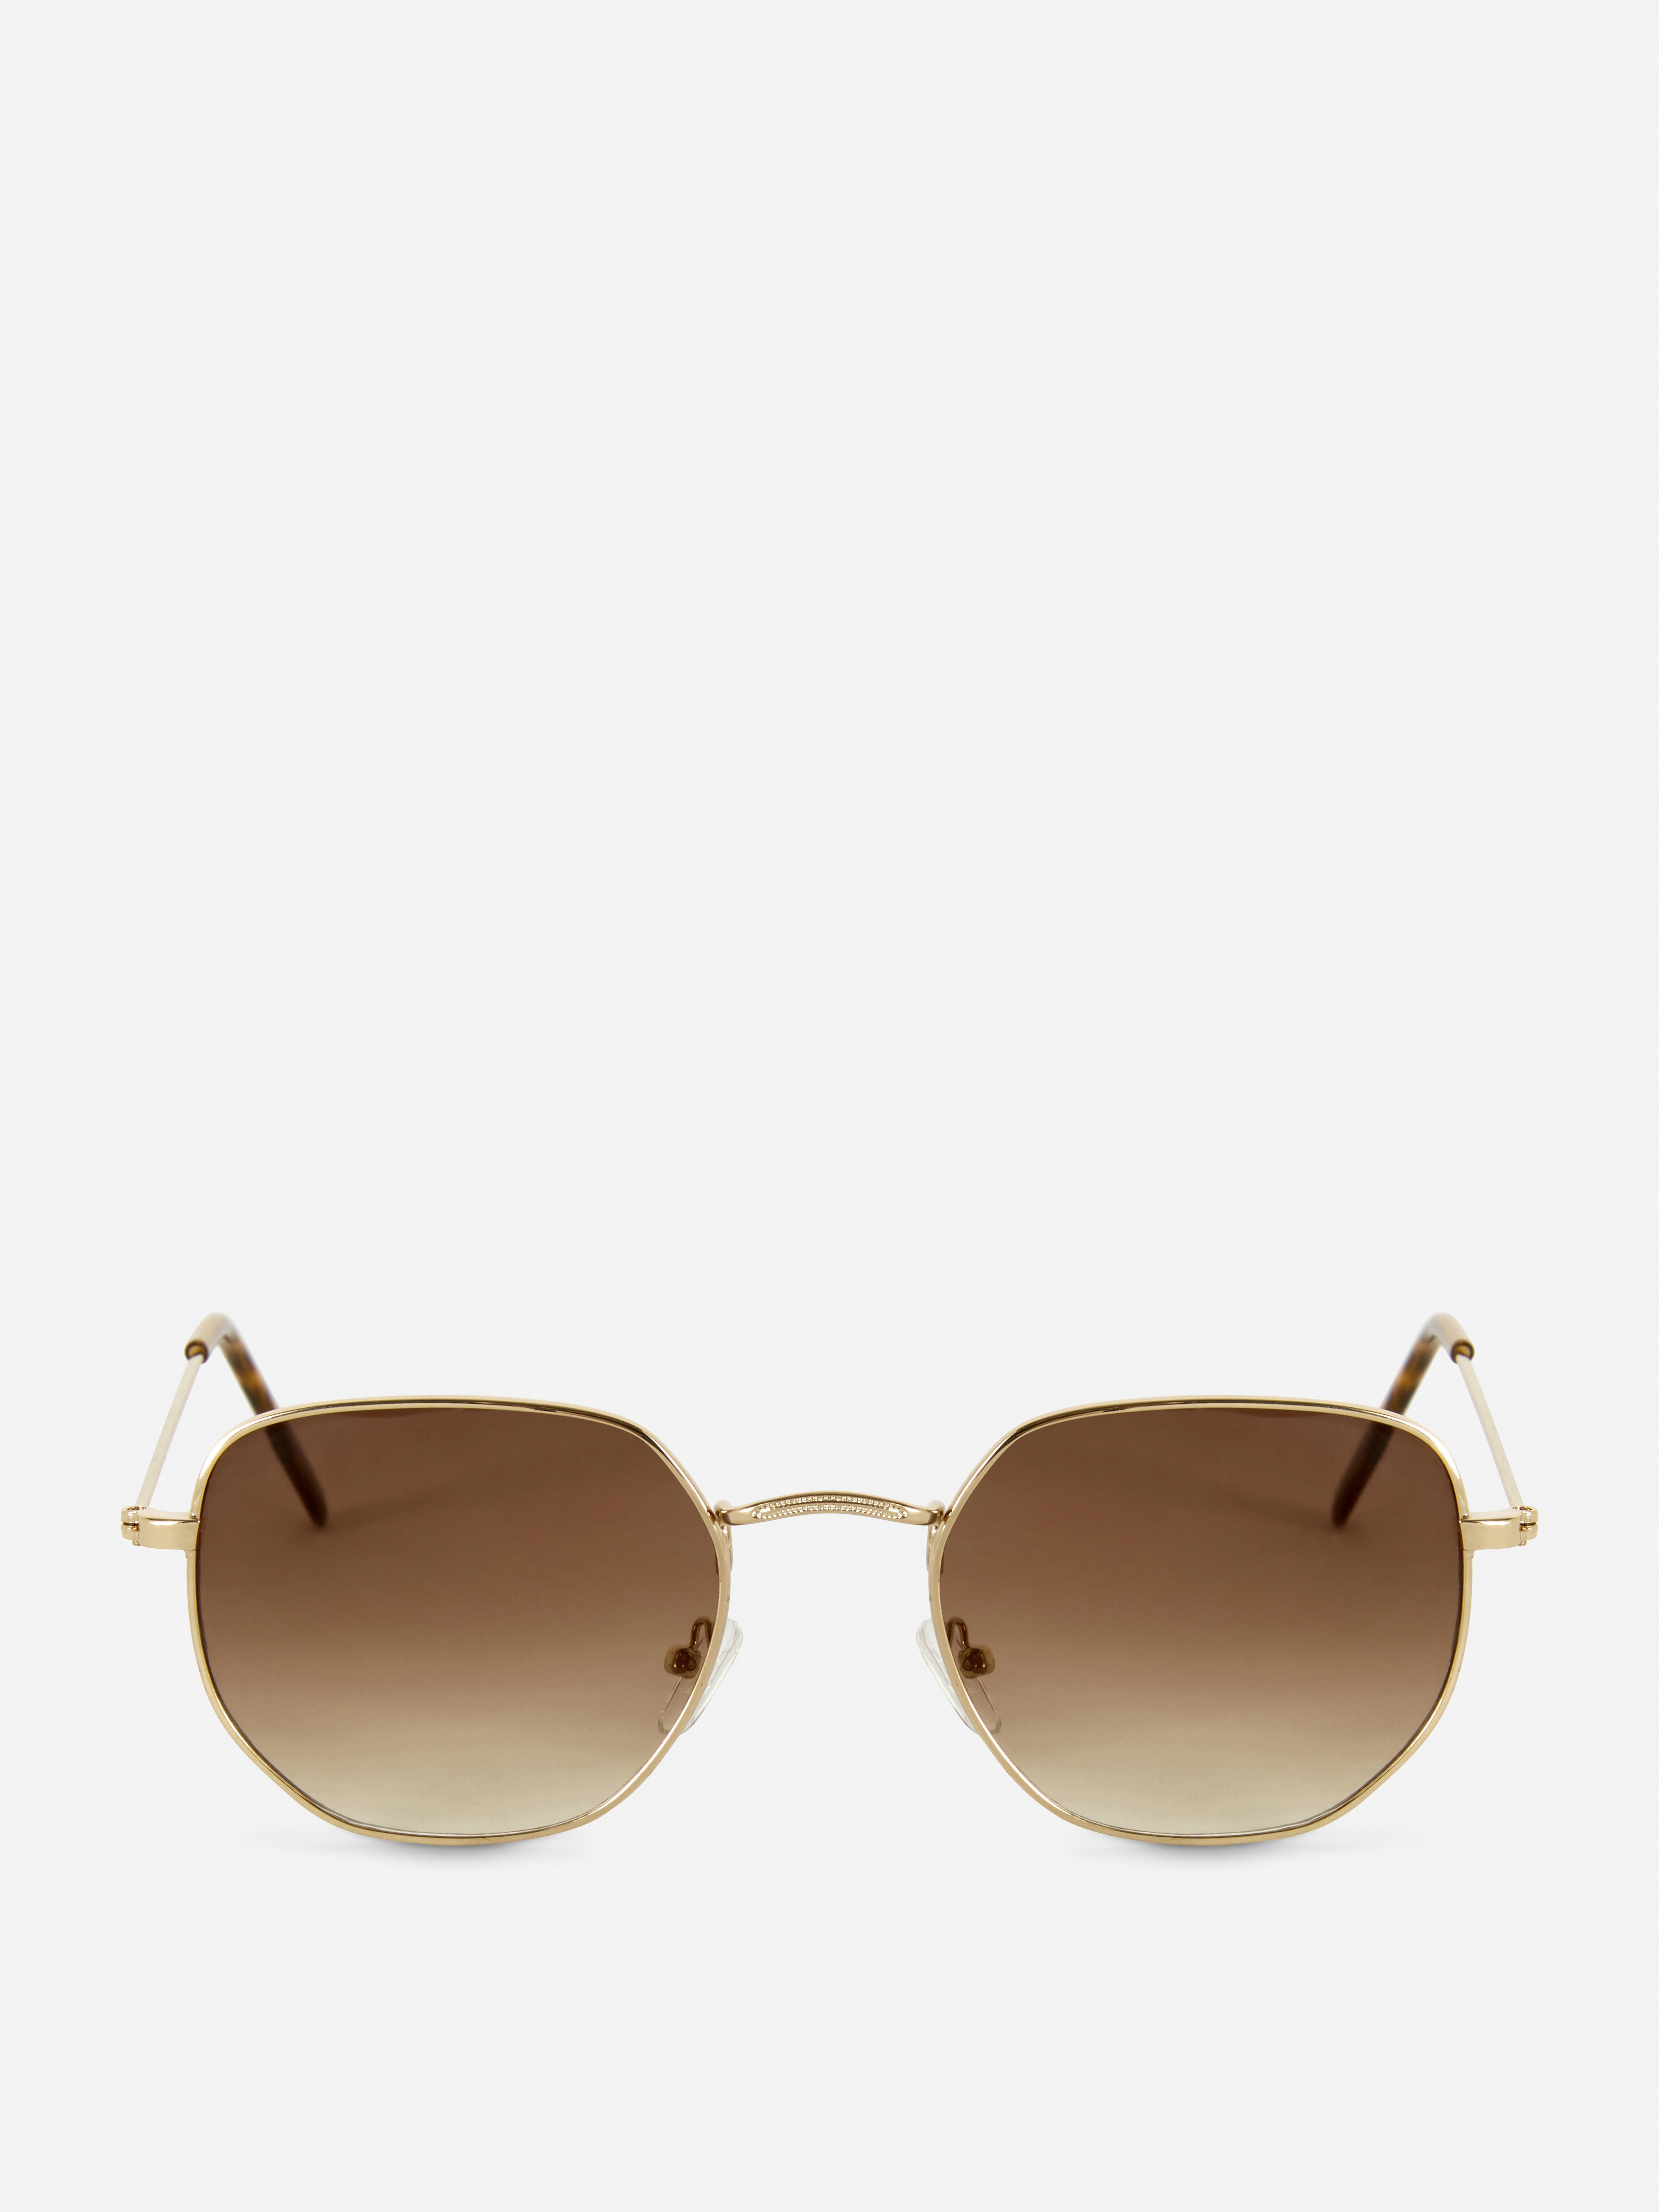 Šestihranné sluneční brýle s kovovými obroučkami